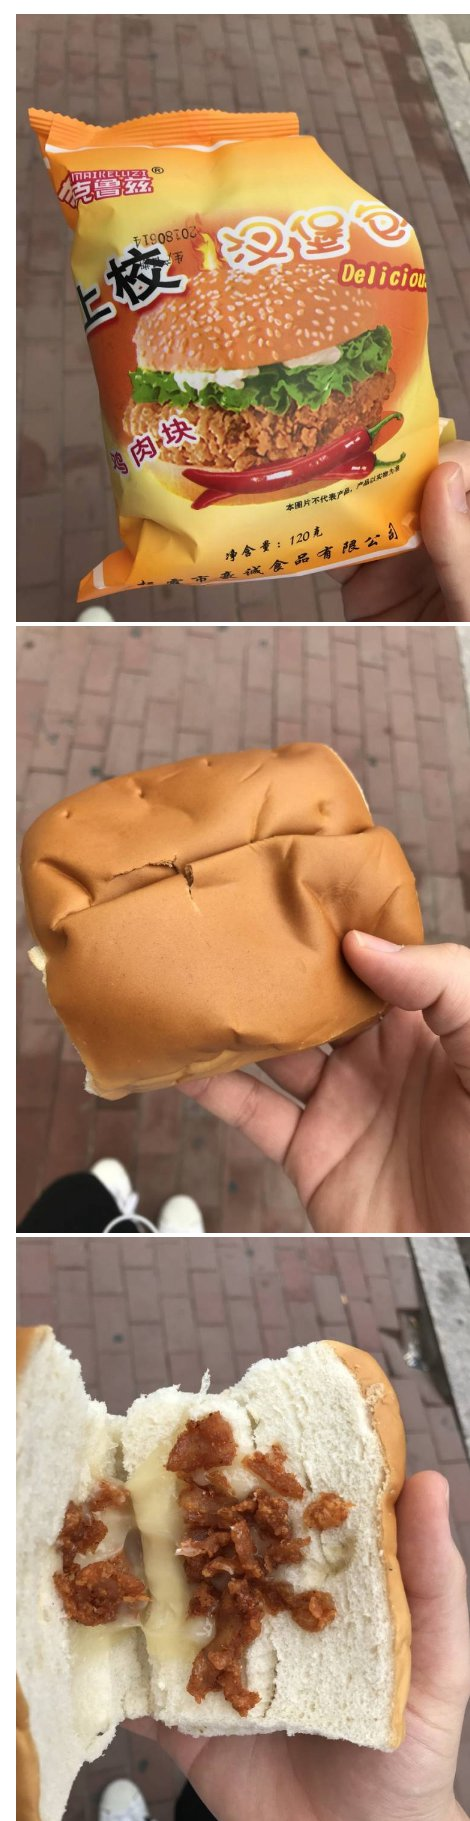 중국에서 파는 편의점 햄버거